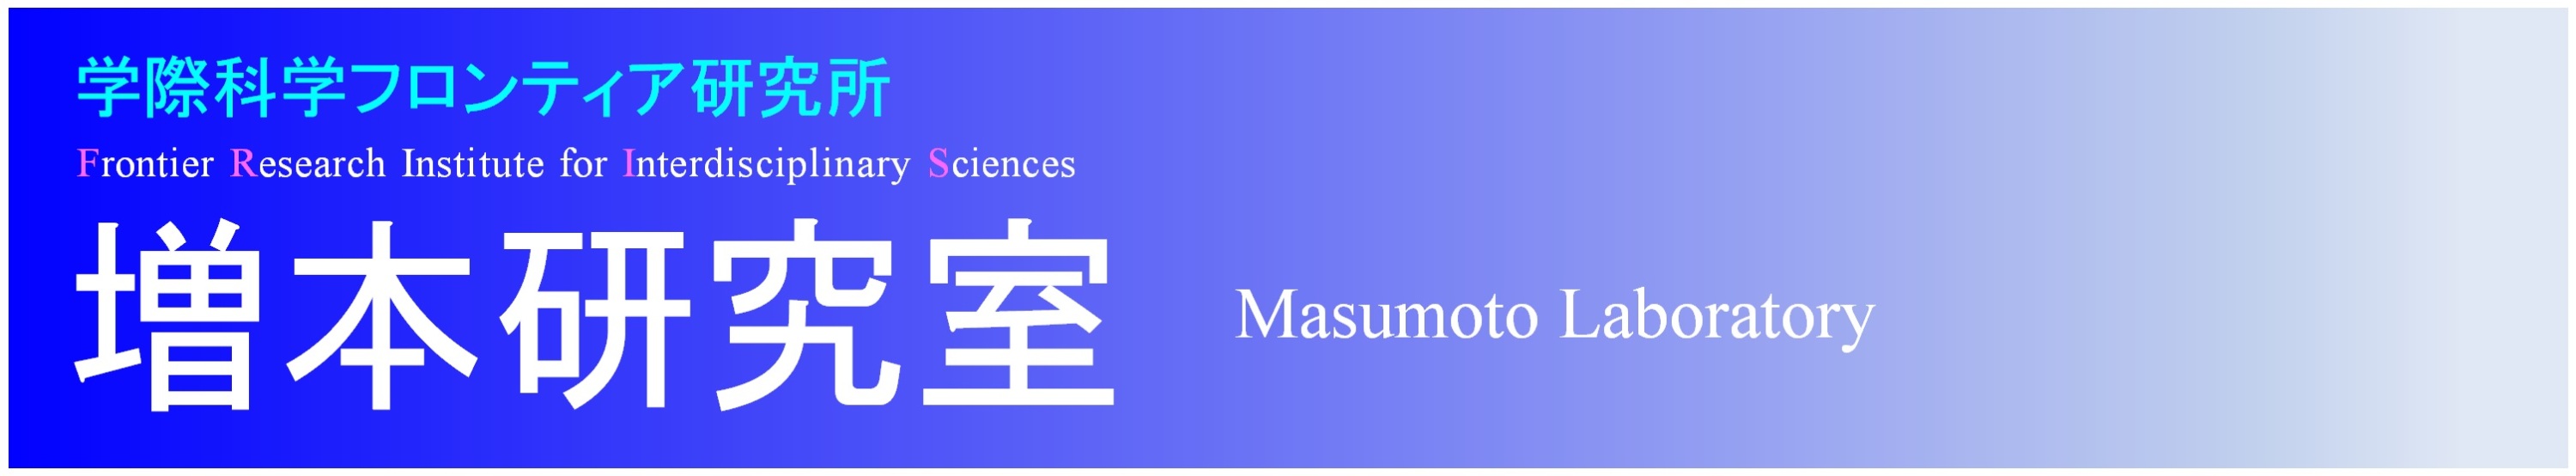 {ւ悤! <br> Welcome to Masumoto Laboratory!